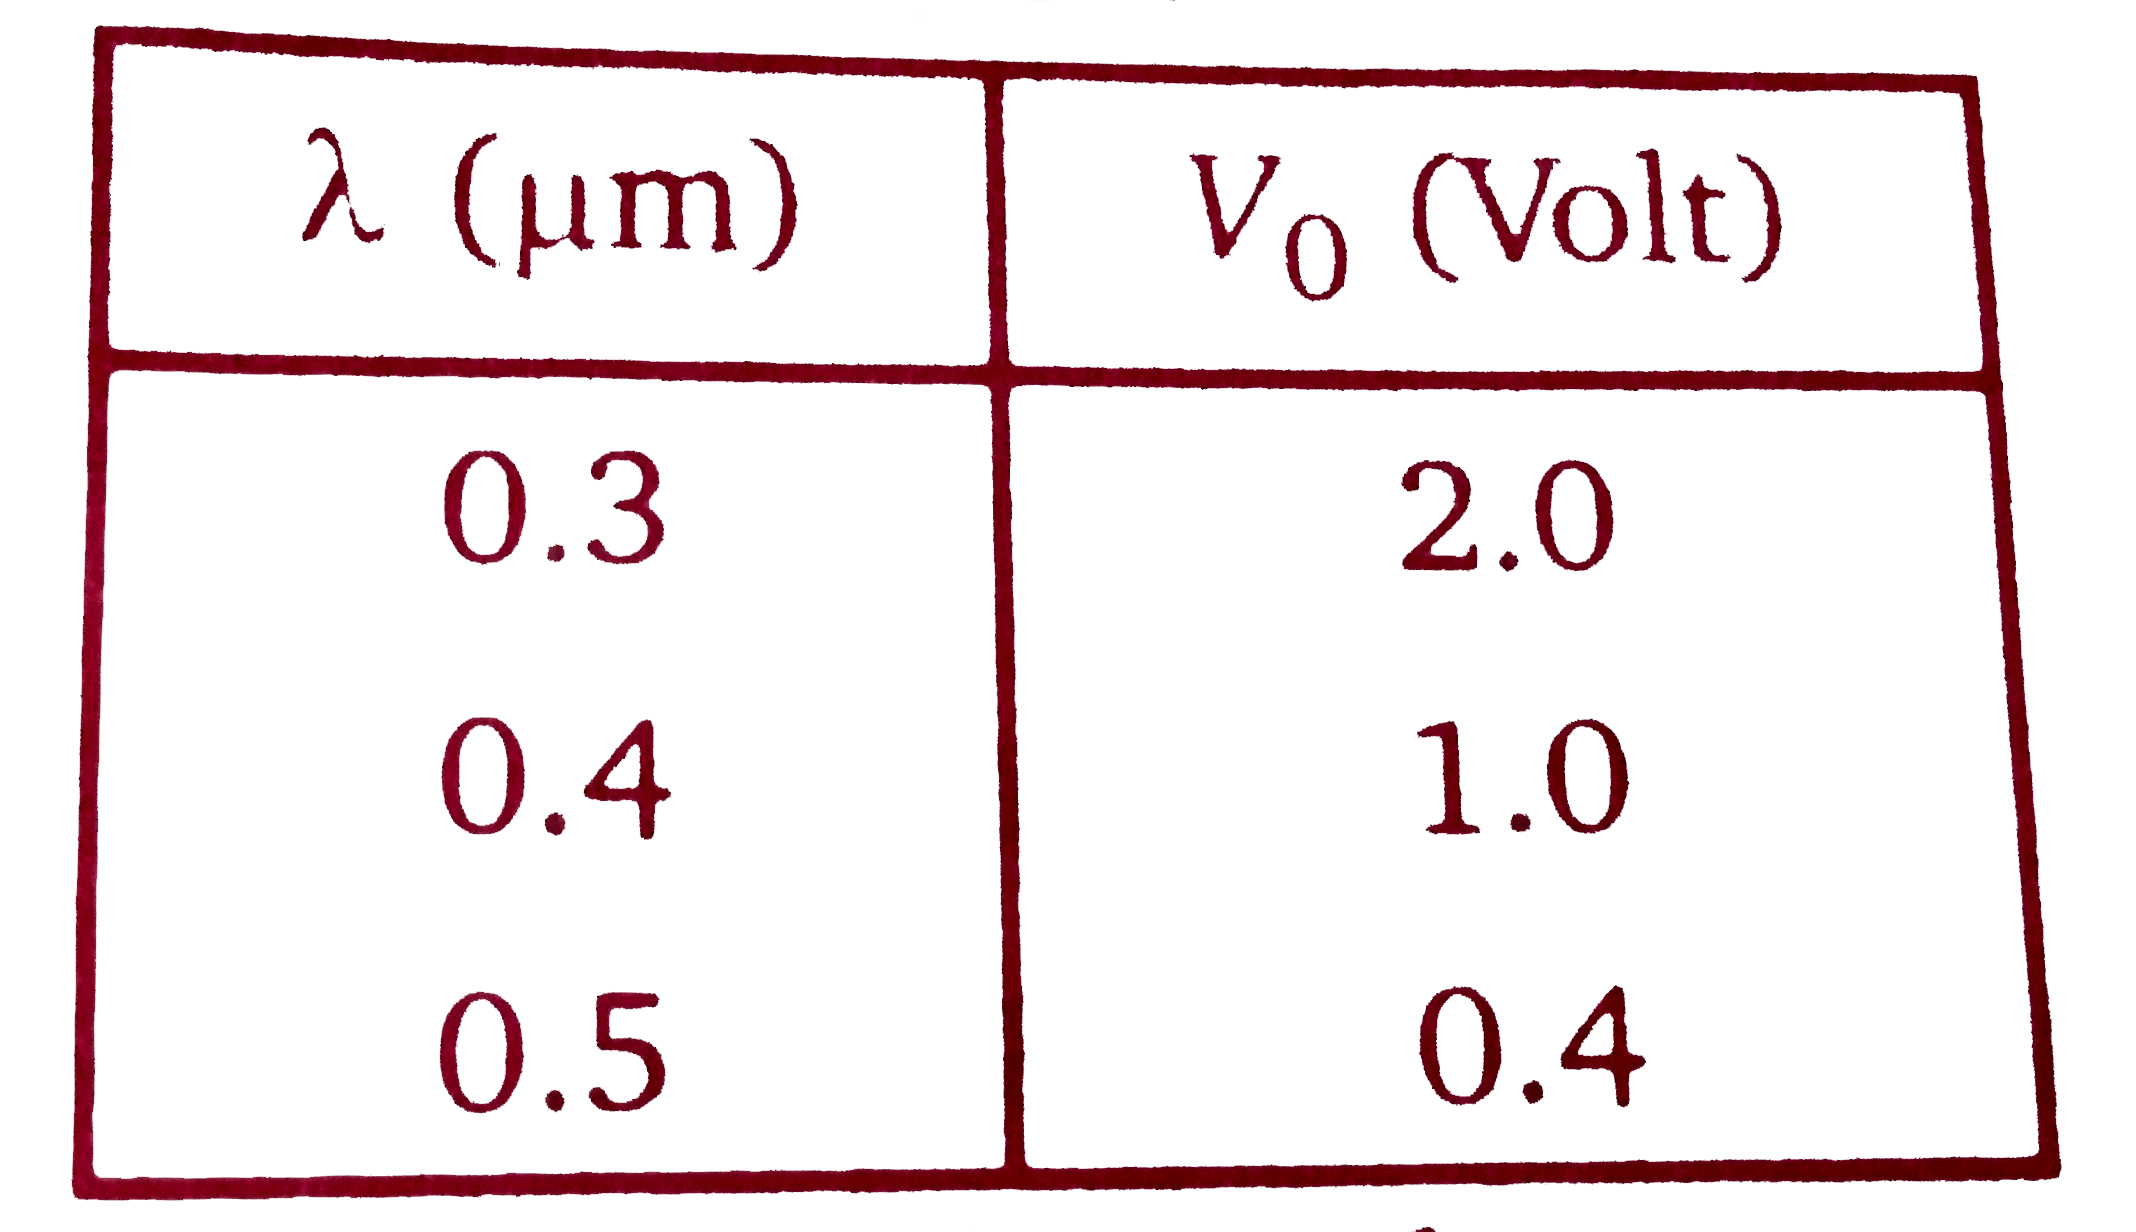 प्लांक  नियतांक  ज्ञात  करने  के लिए एक ऐतिहासिक  प्रयोग  में एक  धातु की सतह  को अलग-अलग  तरंगदैर्घ्य  के प्रकाश से प्रदीप्त  किया गया। उत्सर्जित  प्रकाशिक  इलेक्ट्रॉन  की ऊर्जा  को निरोधी  विभव  (stopping potential )  लगाकर  मापा  गया । उपयोग में लाये  गए  आपतित  प्रकाश  की तरंगदैर्घ्य (lambda )  एवं  सम्बन्धित  निरोधी  विभव (V(0))  के आँकड़े नीचे  दिये गए  हैं            प्रकाश  की गति c=3xx10^(8)ms^(-1)  तथा  इलेक्ट्रॉन का आवेश e=1.6xx10^(-19)C,    दिया गया है । इस  प्रयोग से निकाले  गए  प्लांक  नियतांक  ( J s मात्रक  में ) का मान  है :